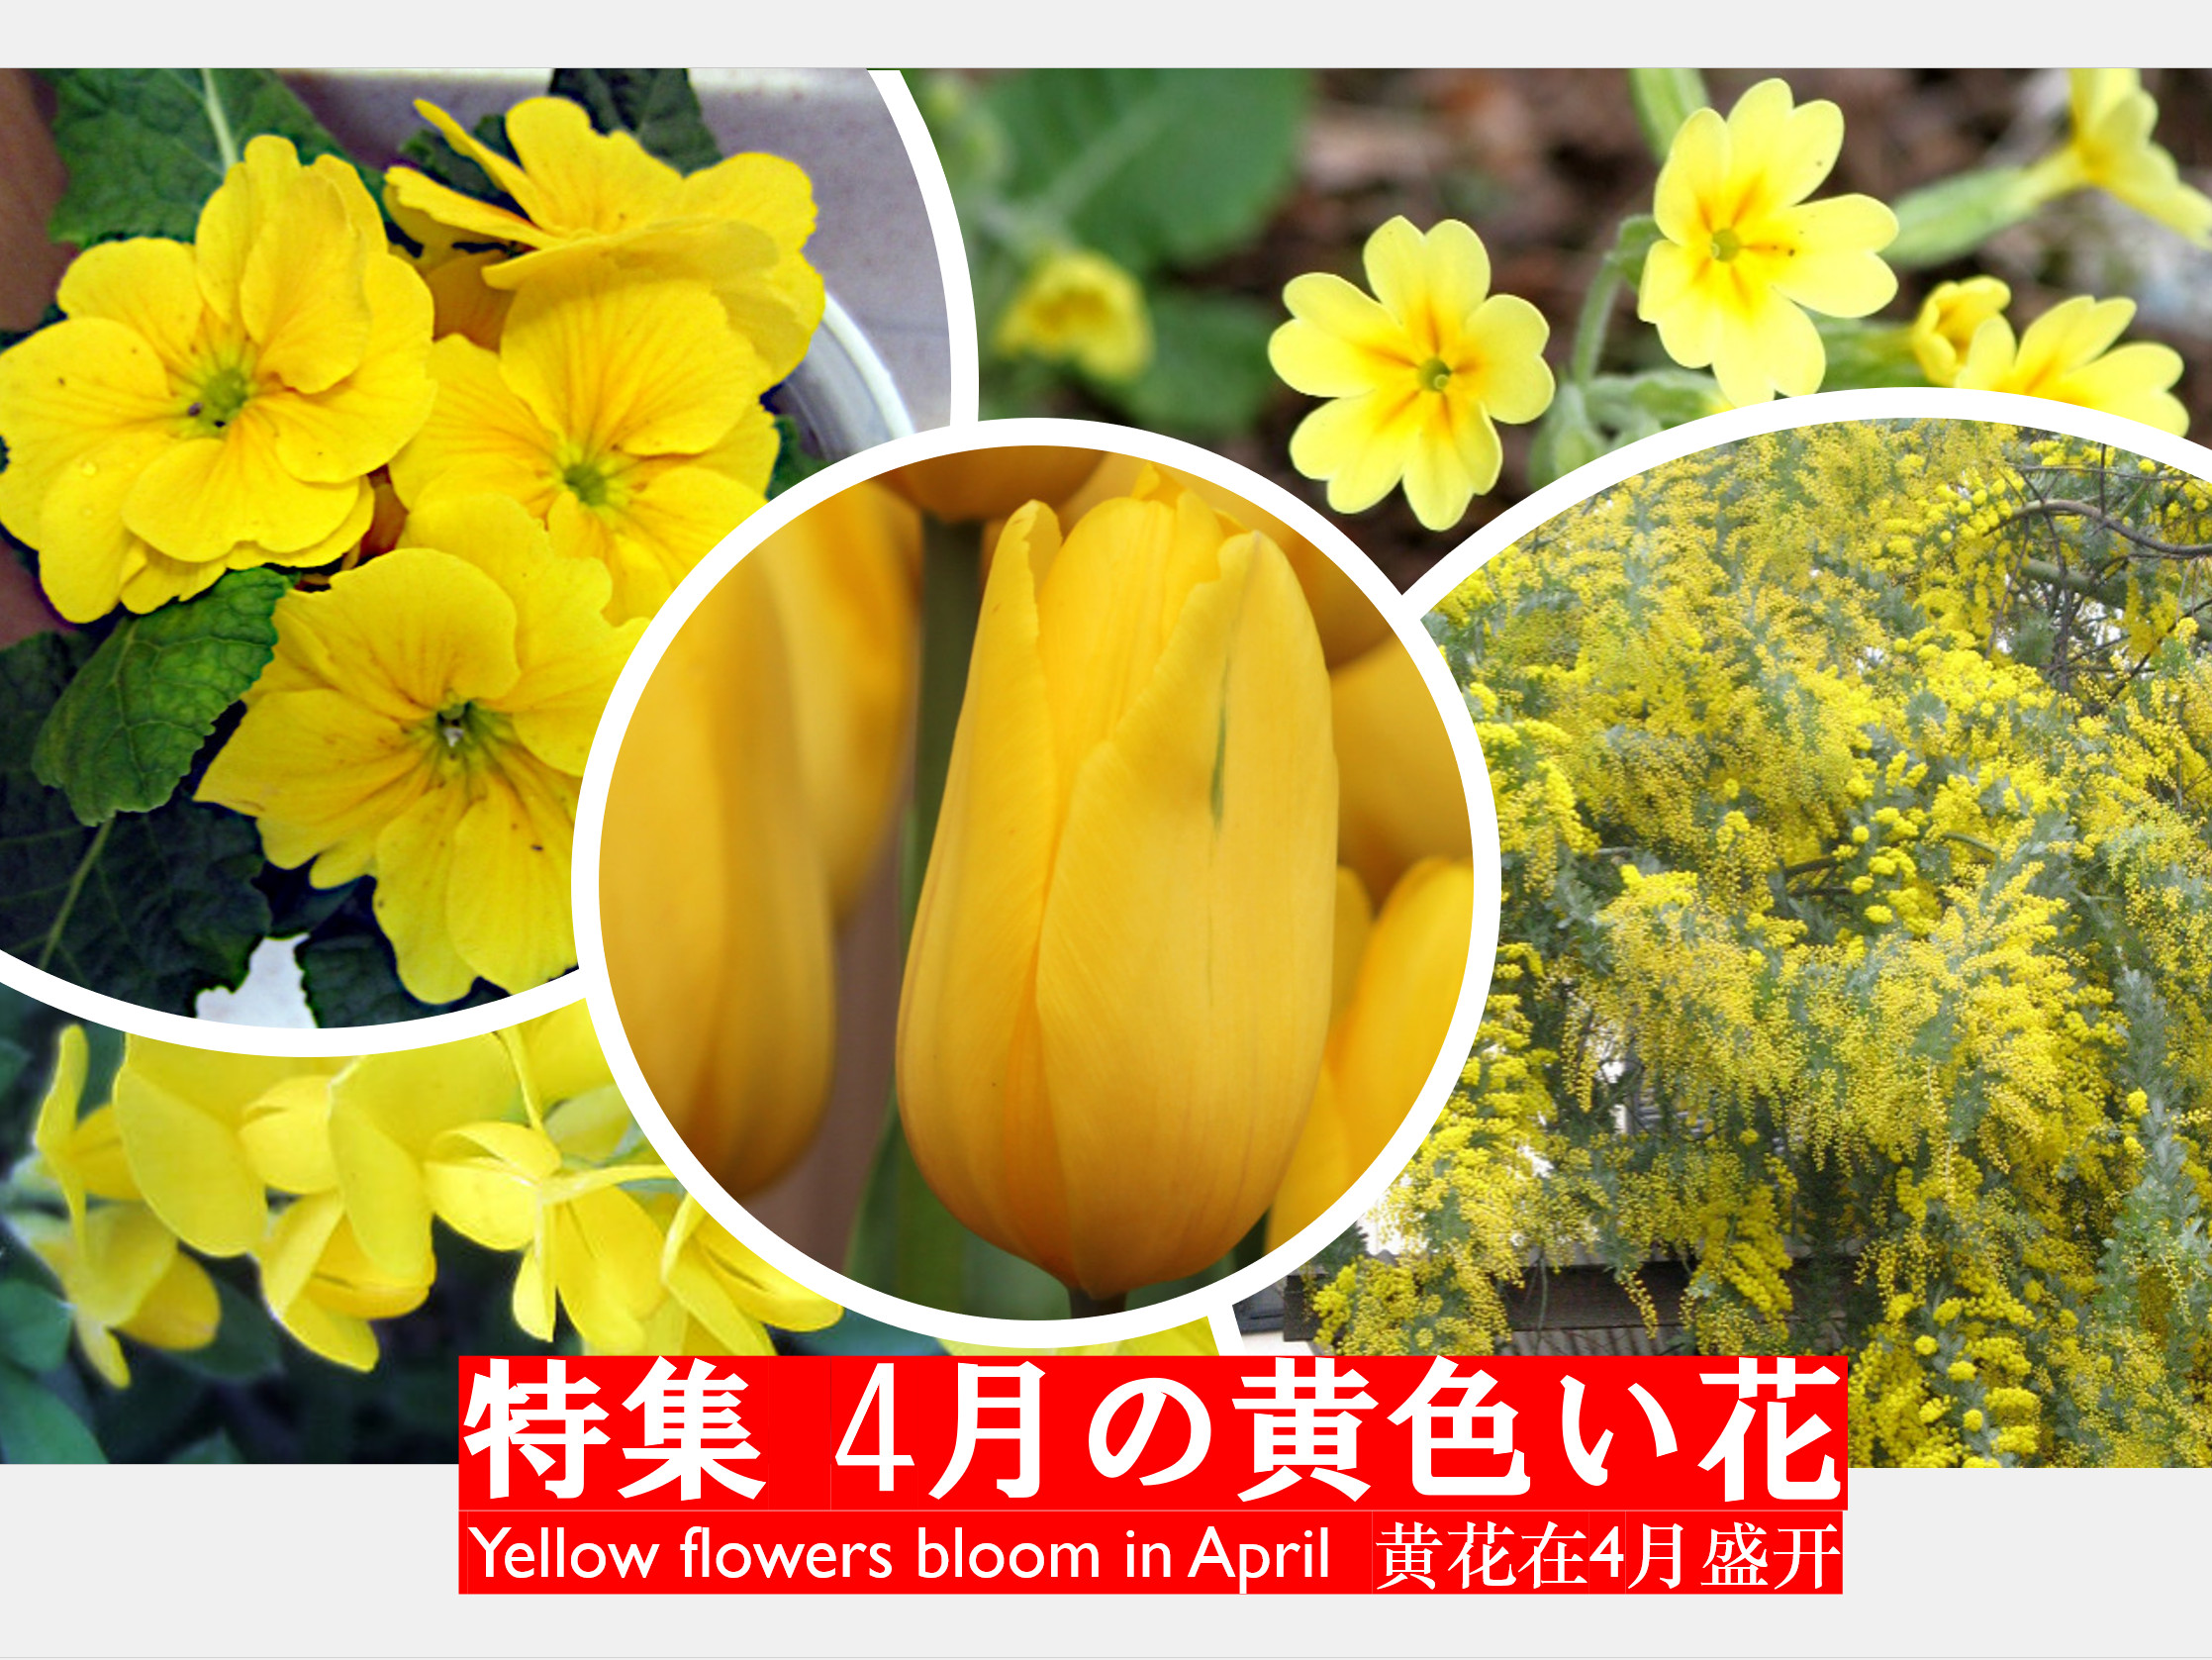 黄花在4月盛开